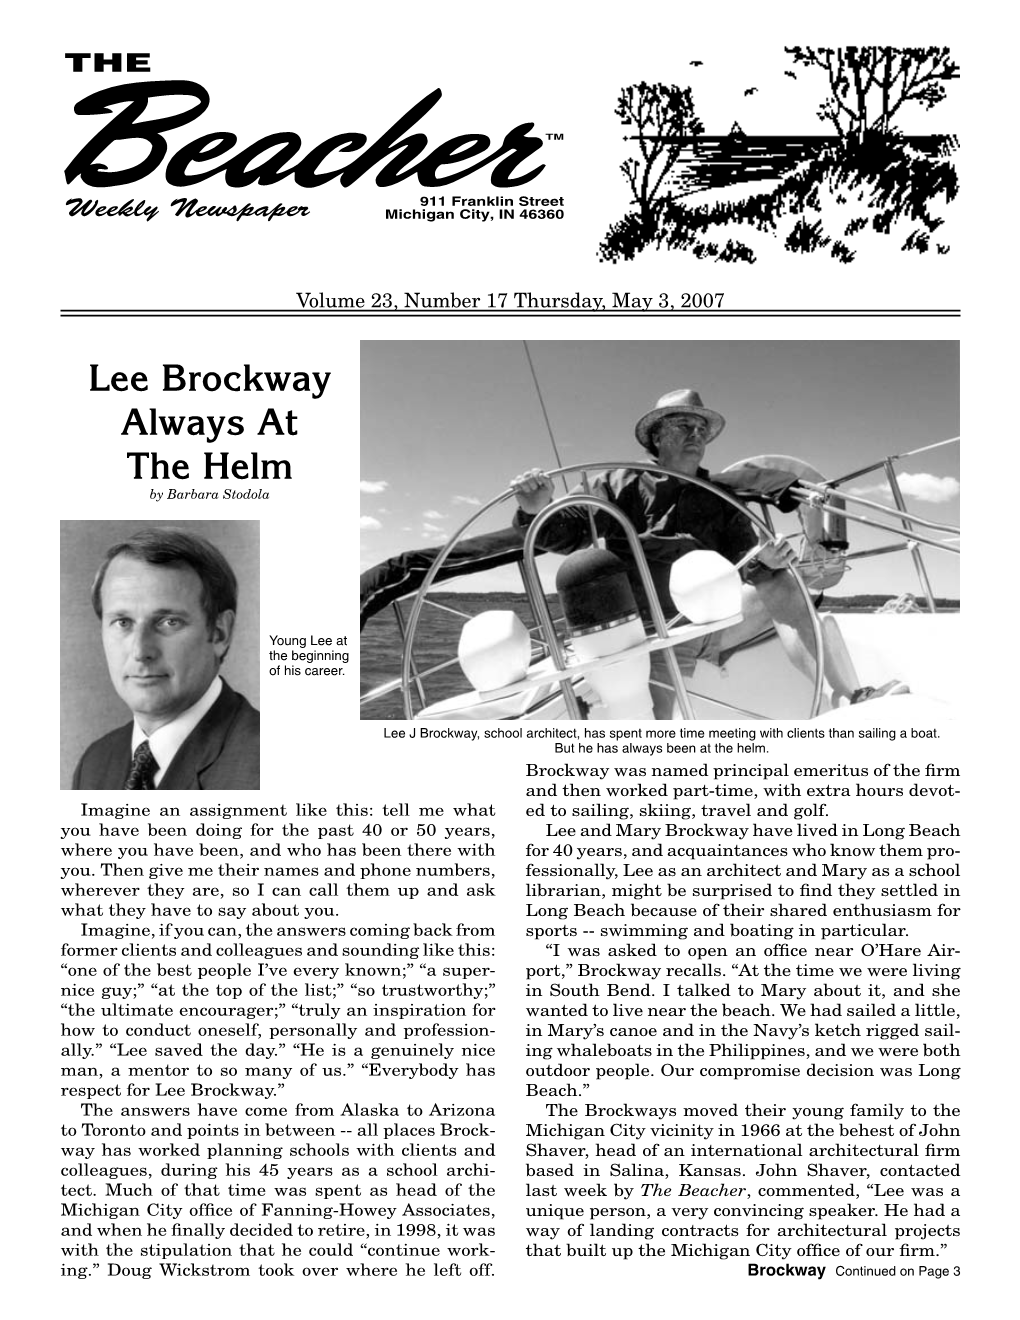 Lee Brockway Always at the Helm by Barbara Stodola